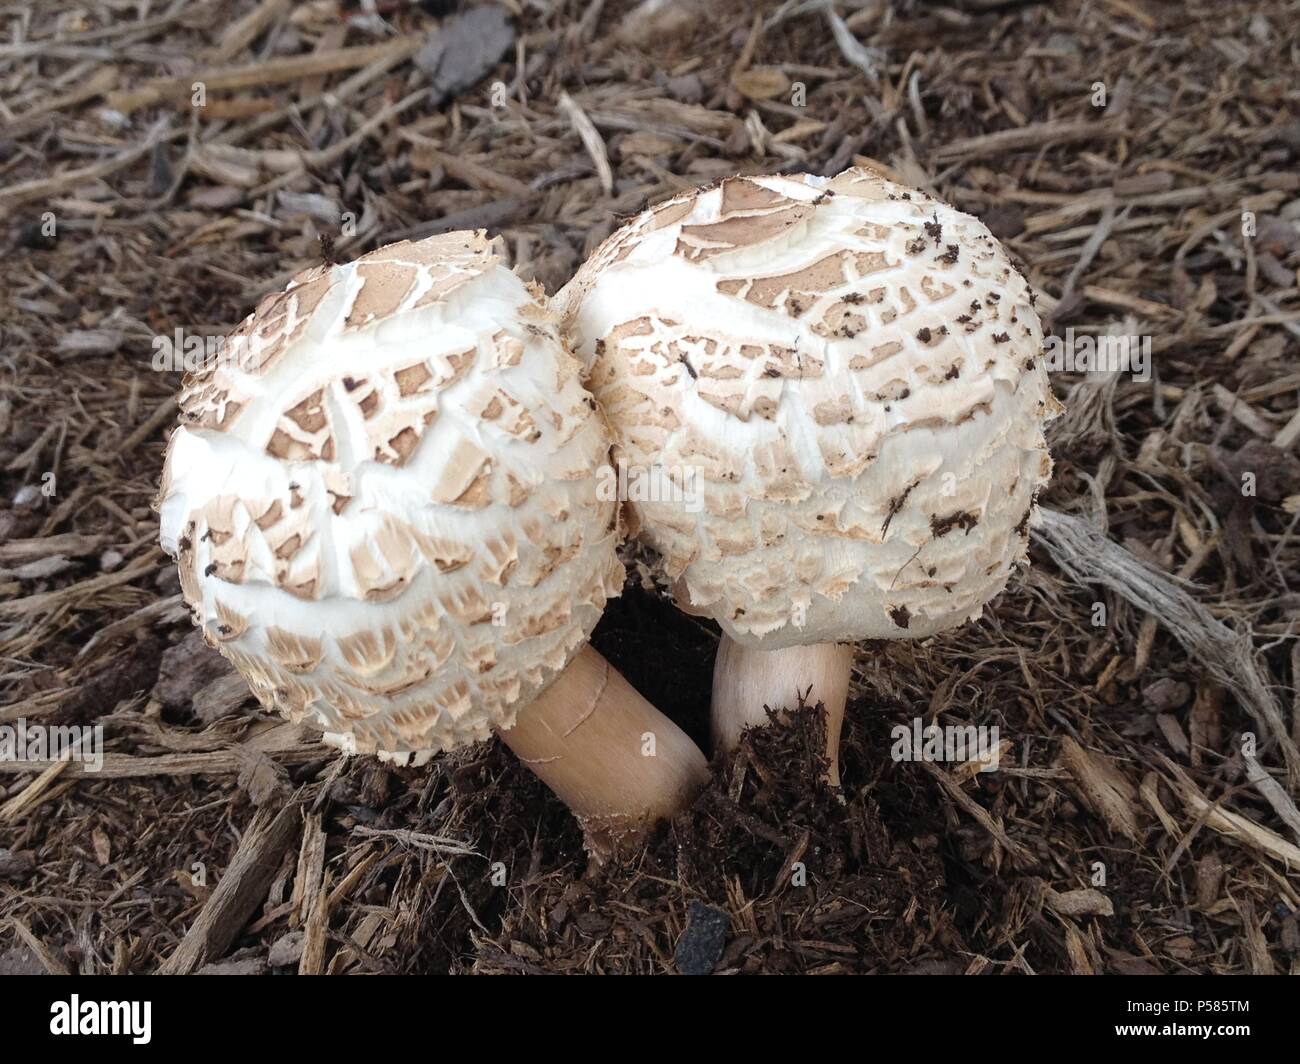 Shaggy Parasol mushroom Stock Photo